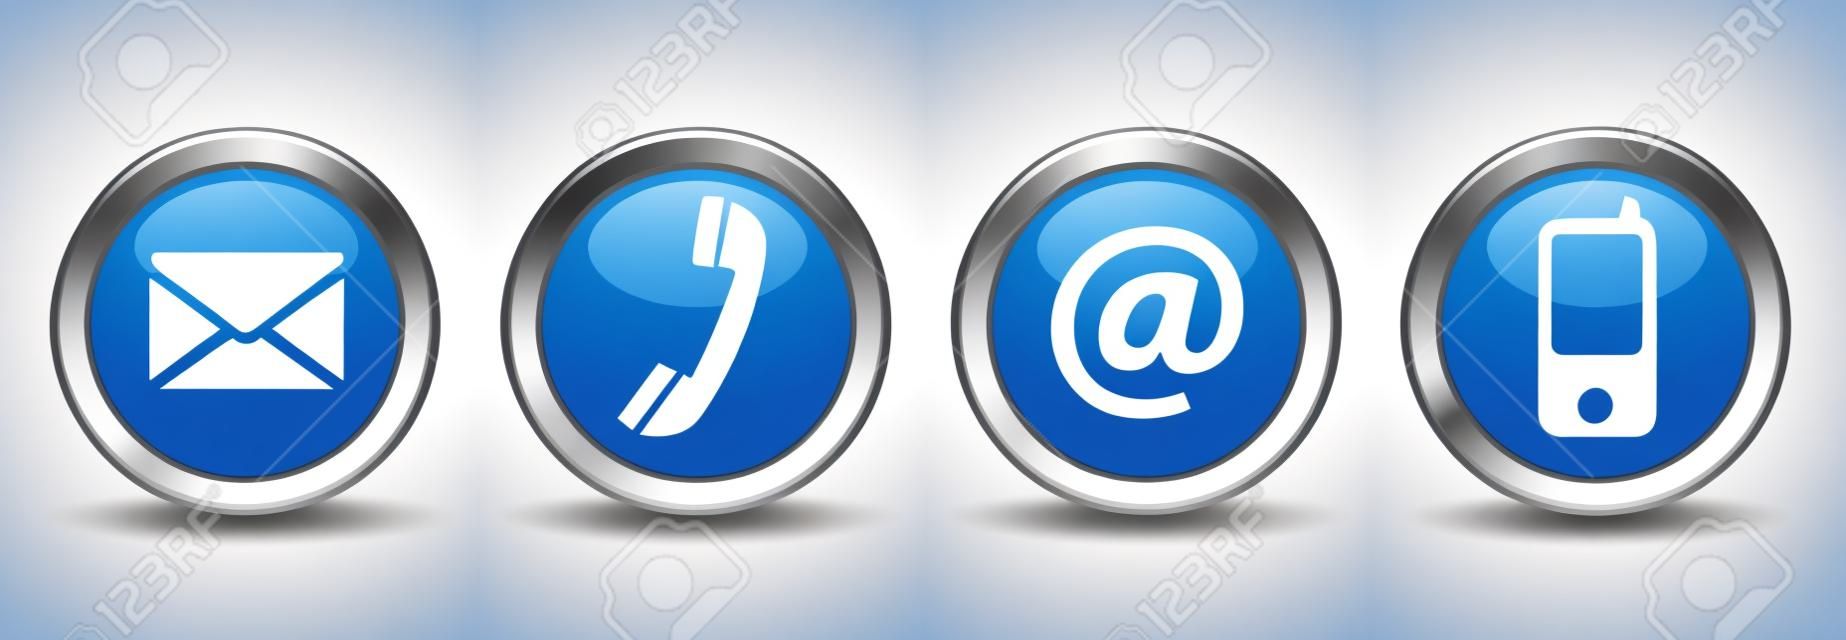 Contactez-nous boutons web mis avec le courrier électronique, au téléphone et icônes mobiles sur fond bleu vecteur insigne en argent EPS 10 illustration isolé sur fond blanc.